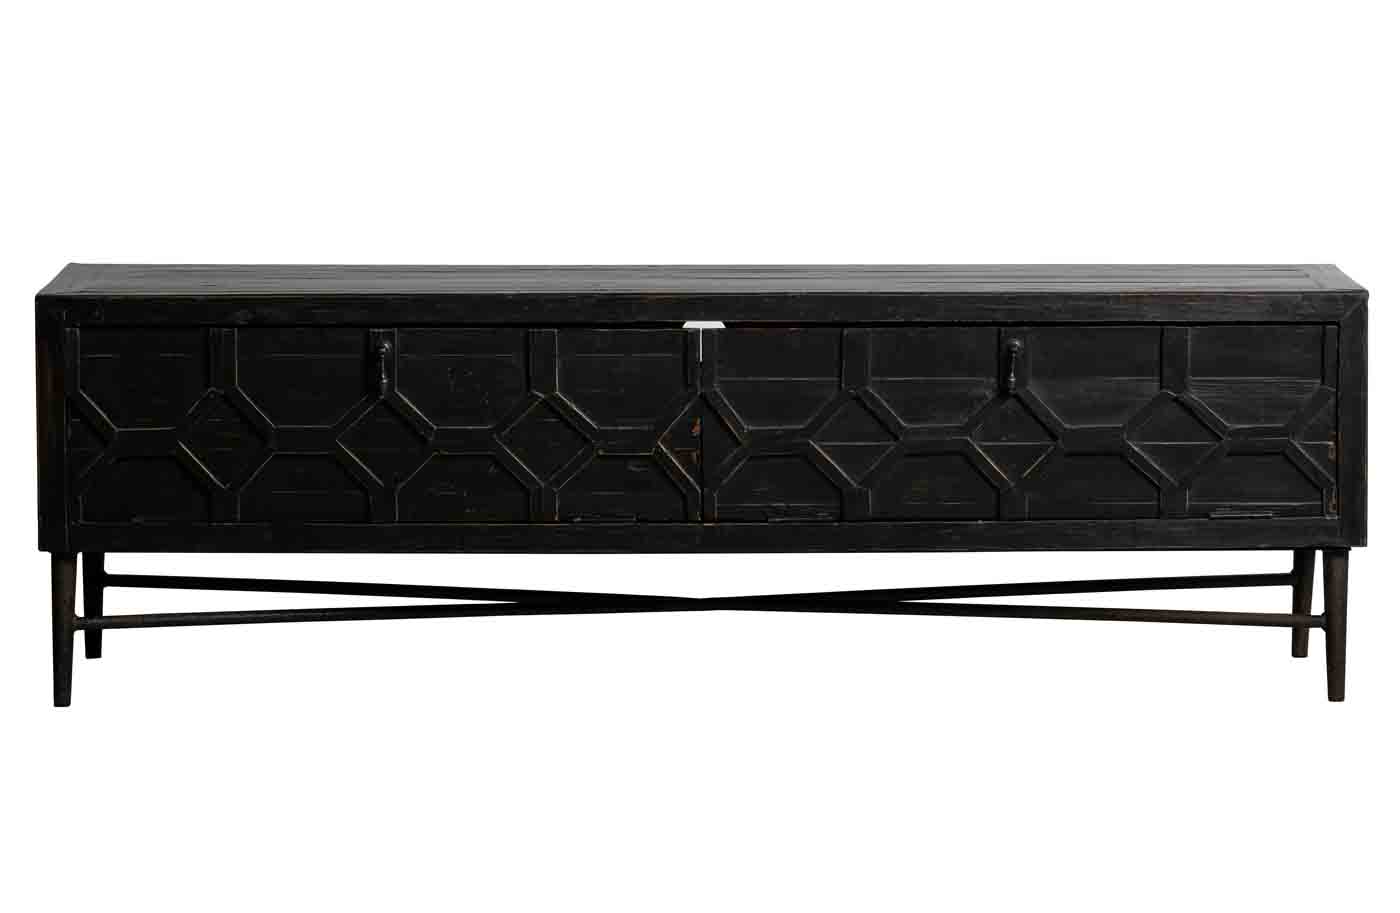 TV Lowboard Bequest in 160cm länge bietet viel Platz und besticht durch das eindrucksvolle Design